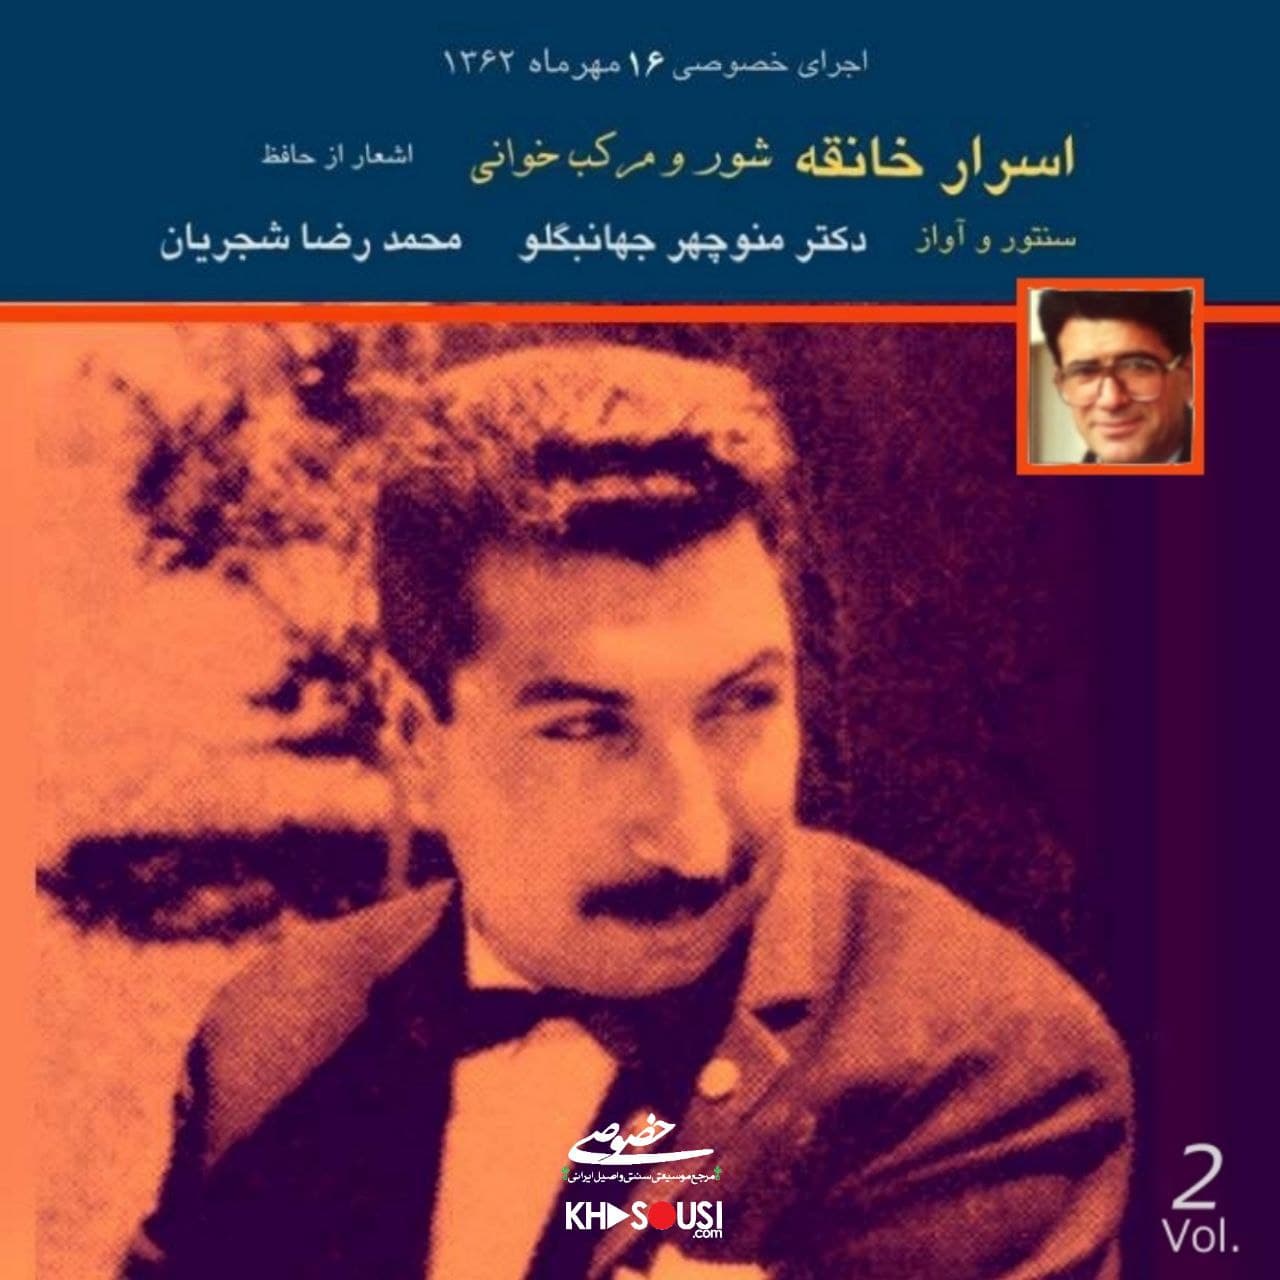 اسرار خانقه - اجرای خصوصی محمدرضا شجریان و منوچهر جهانبگلو